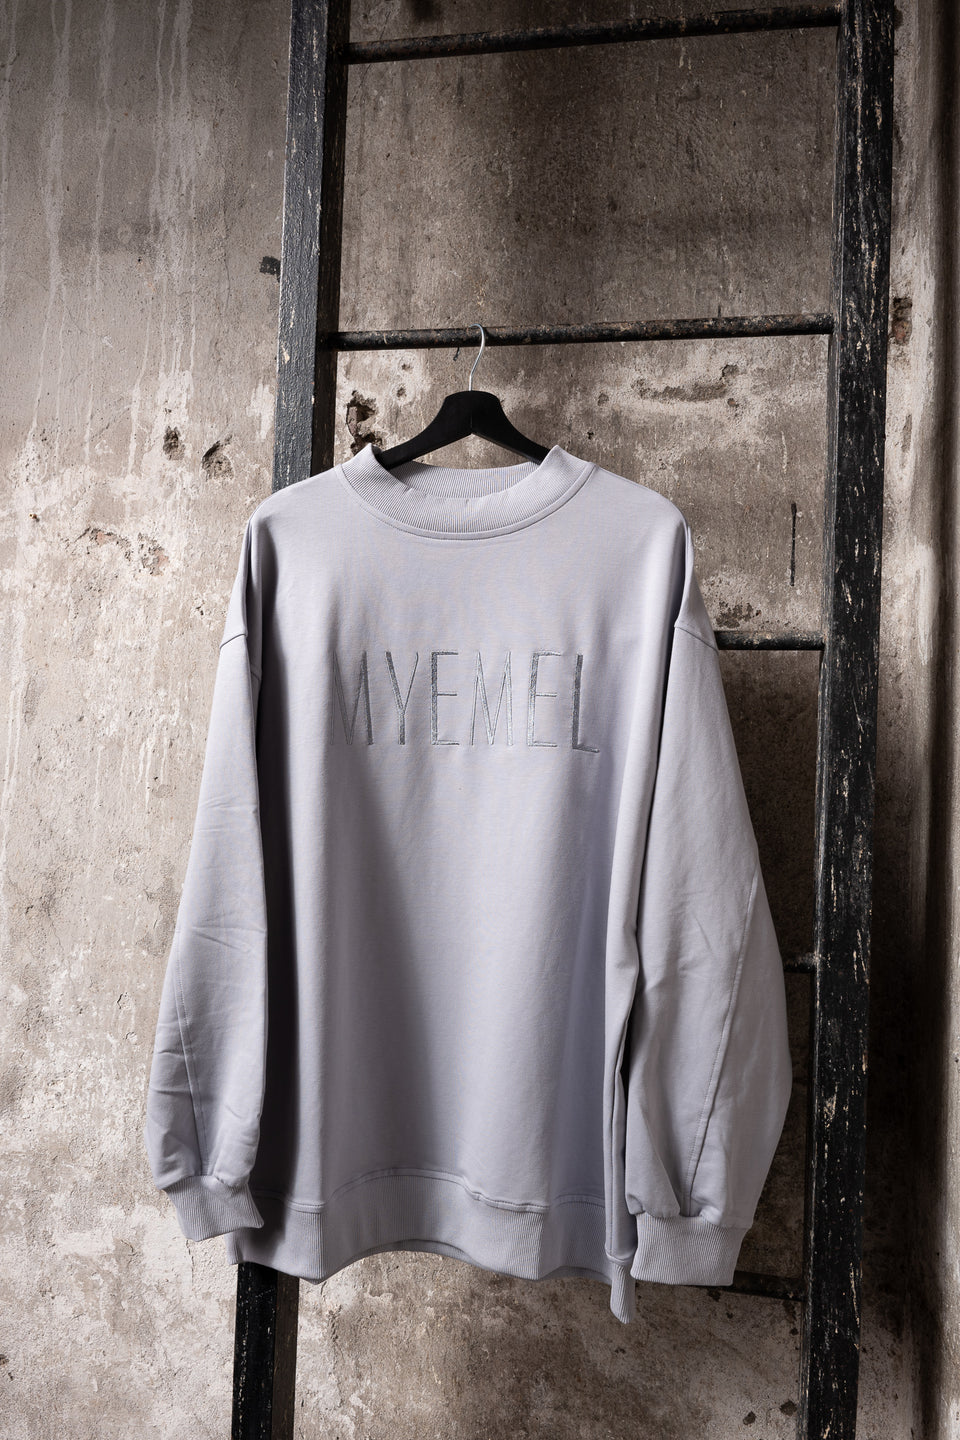 MYEMEL Sweater Men